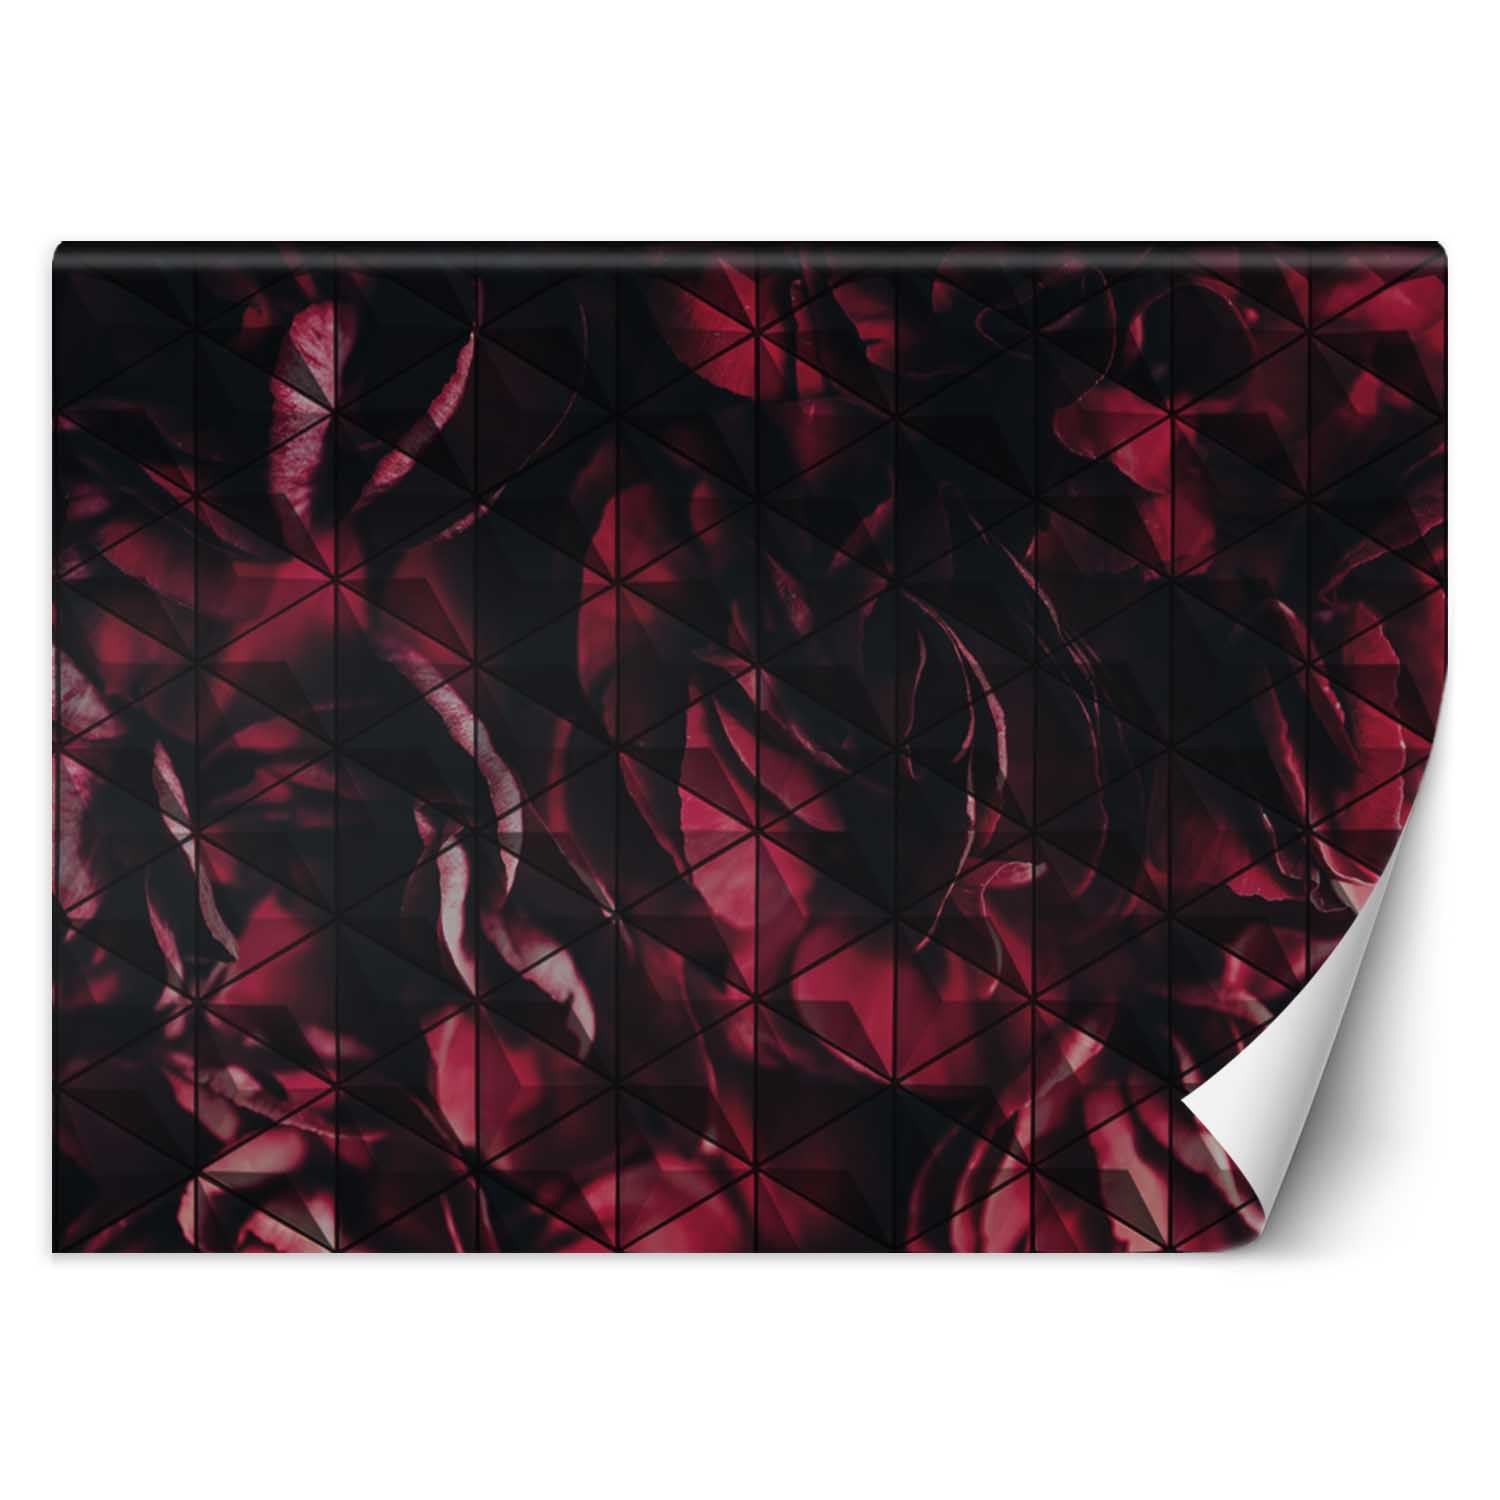 Trend24 – Behang – Rode Bloemblaadjes – Behangpapier – Behang Woonkamer – Fotobehang – 450x315x2 cm – Incl. behanglijm